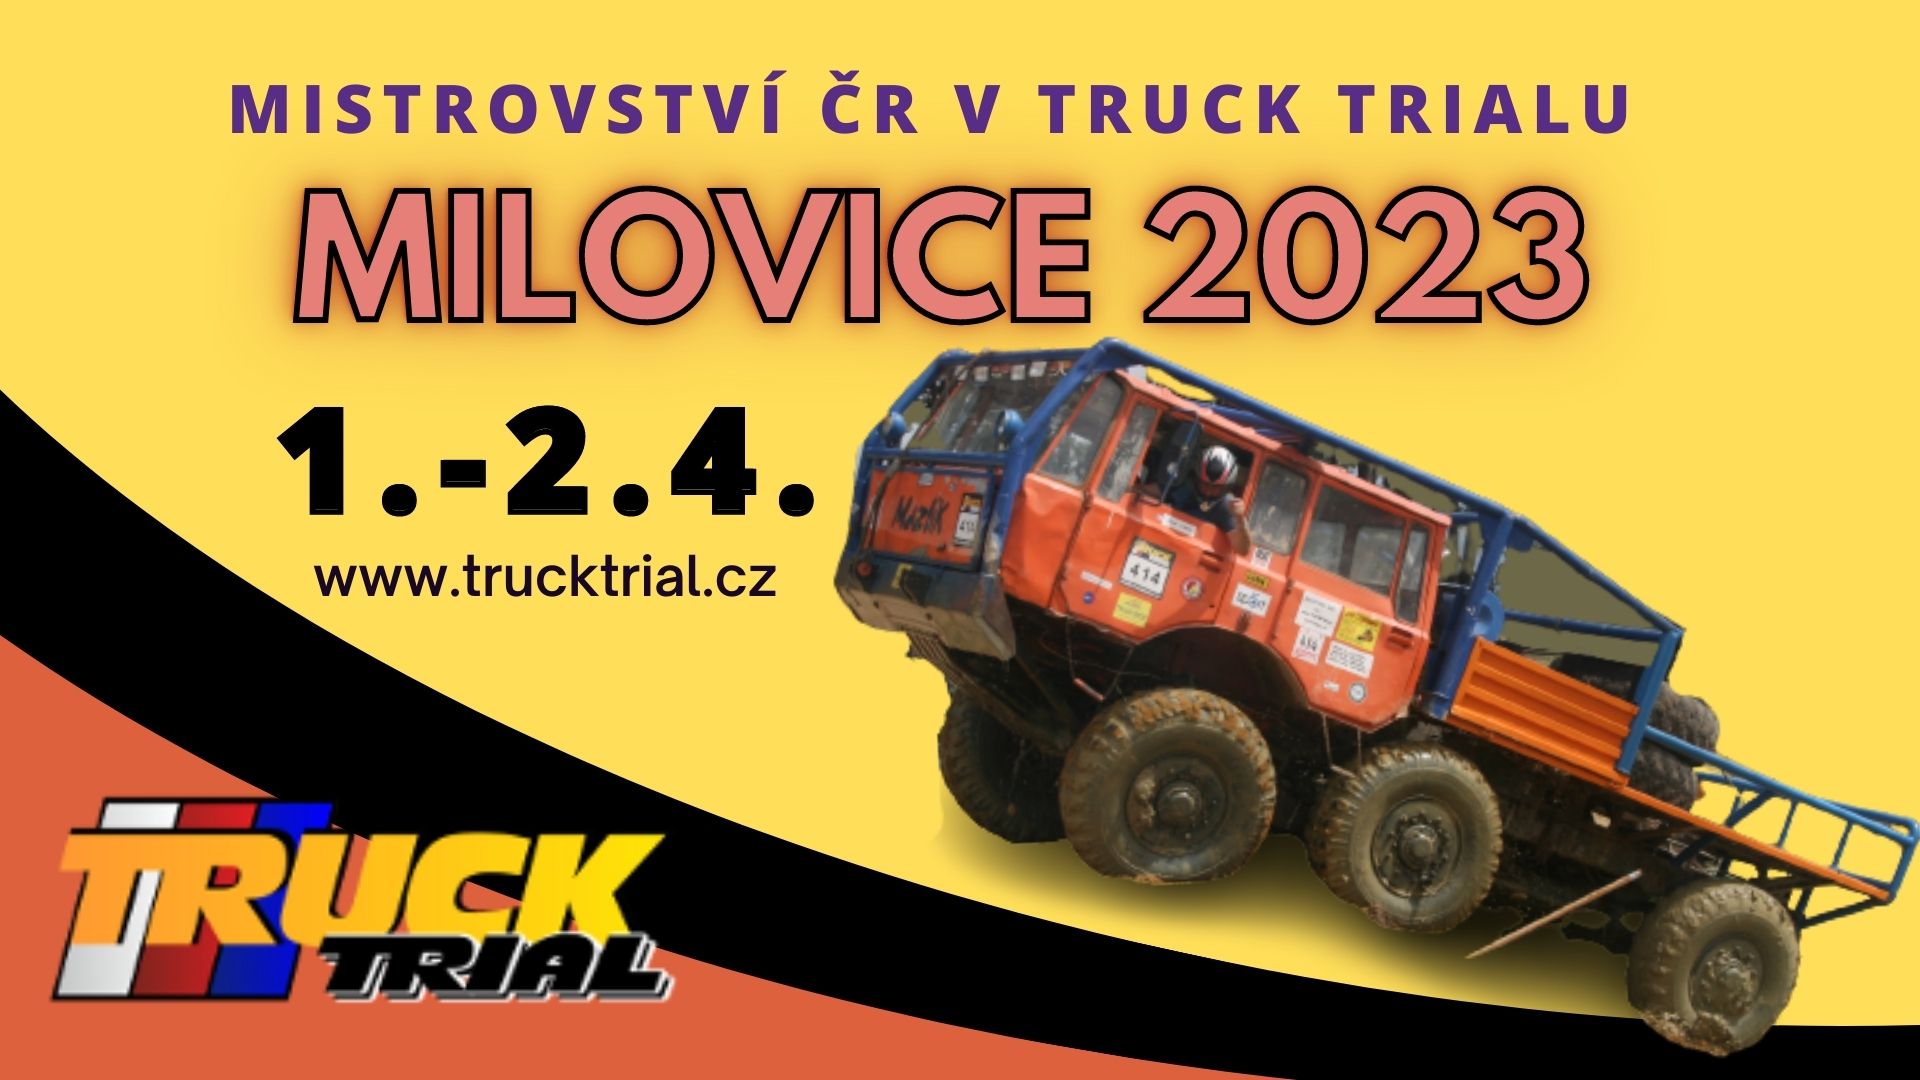 Mistrovství ČR v Truck trialu 2023 - Milovice u Nymburka